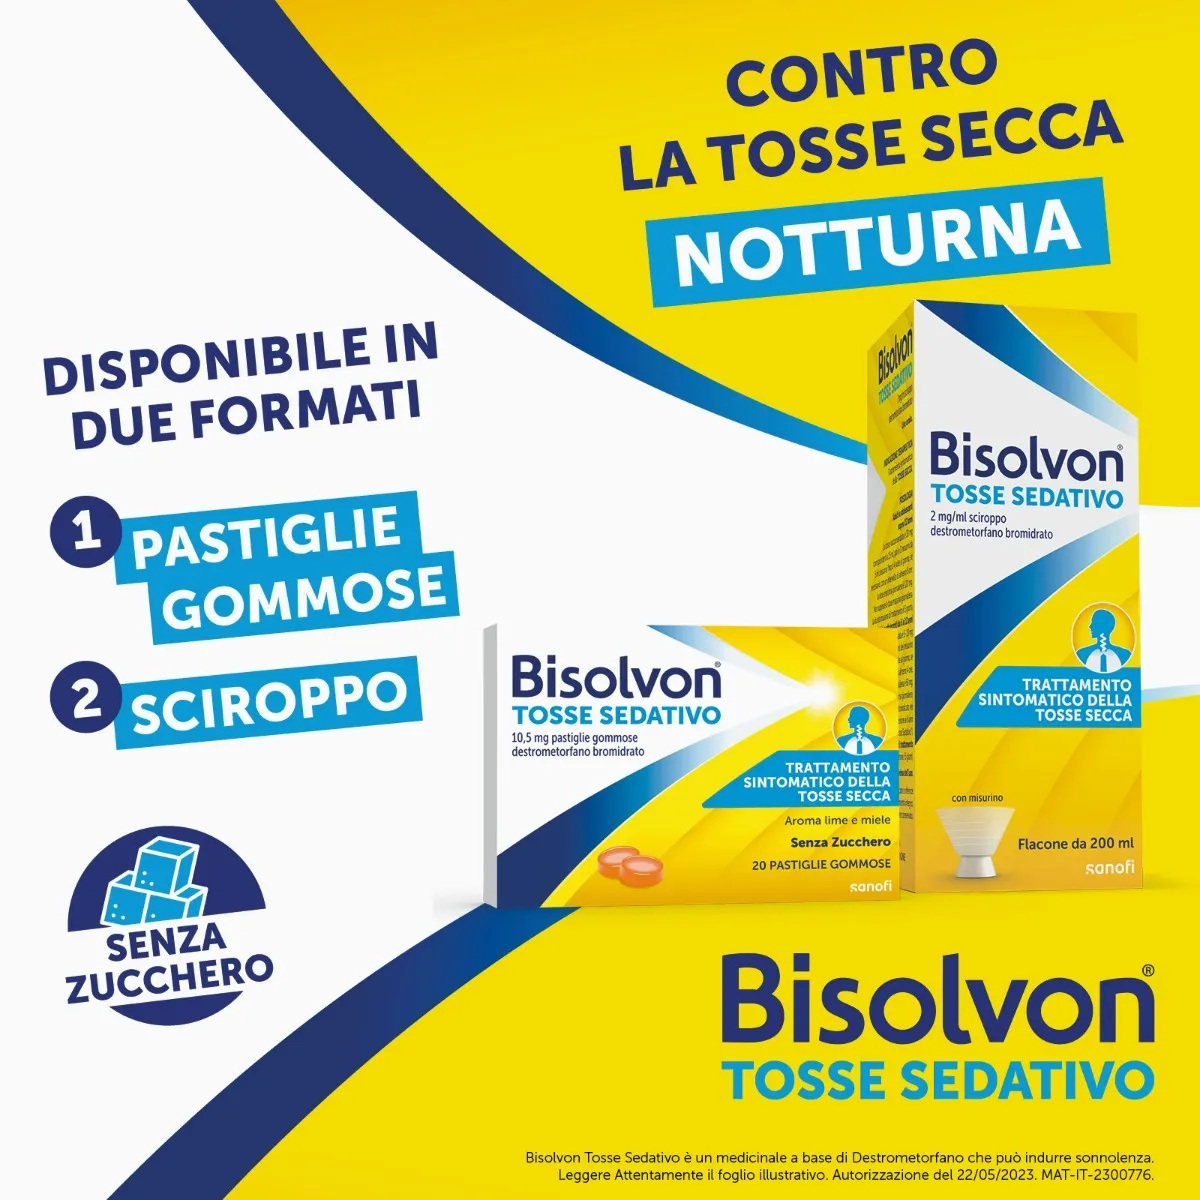 Bisolvon Tosse Sedativo Sciroppo 2 mg/ml 200 ml Tosse Secca